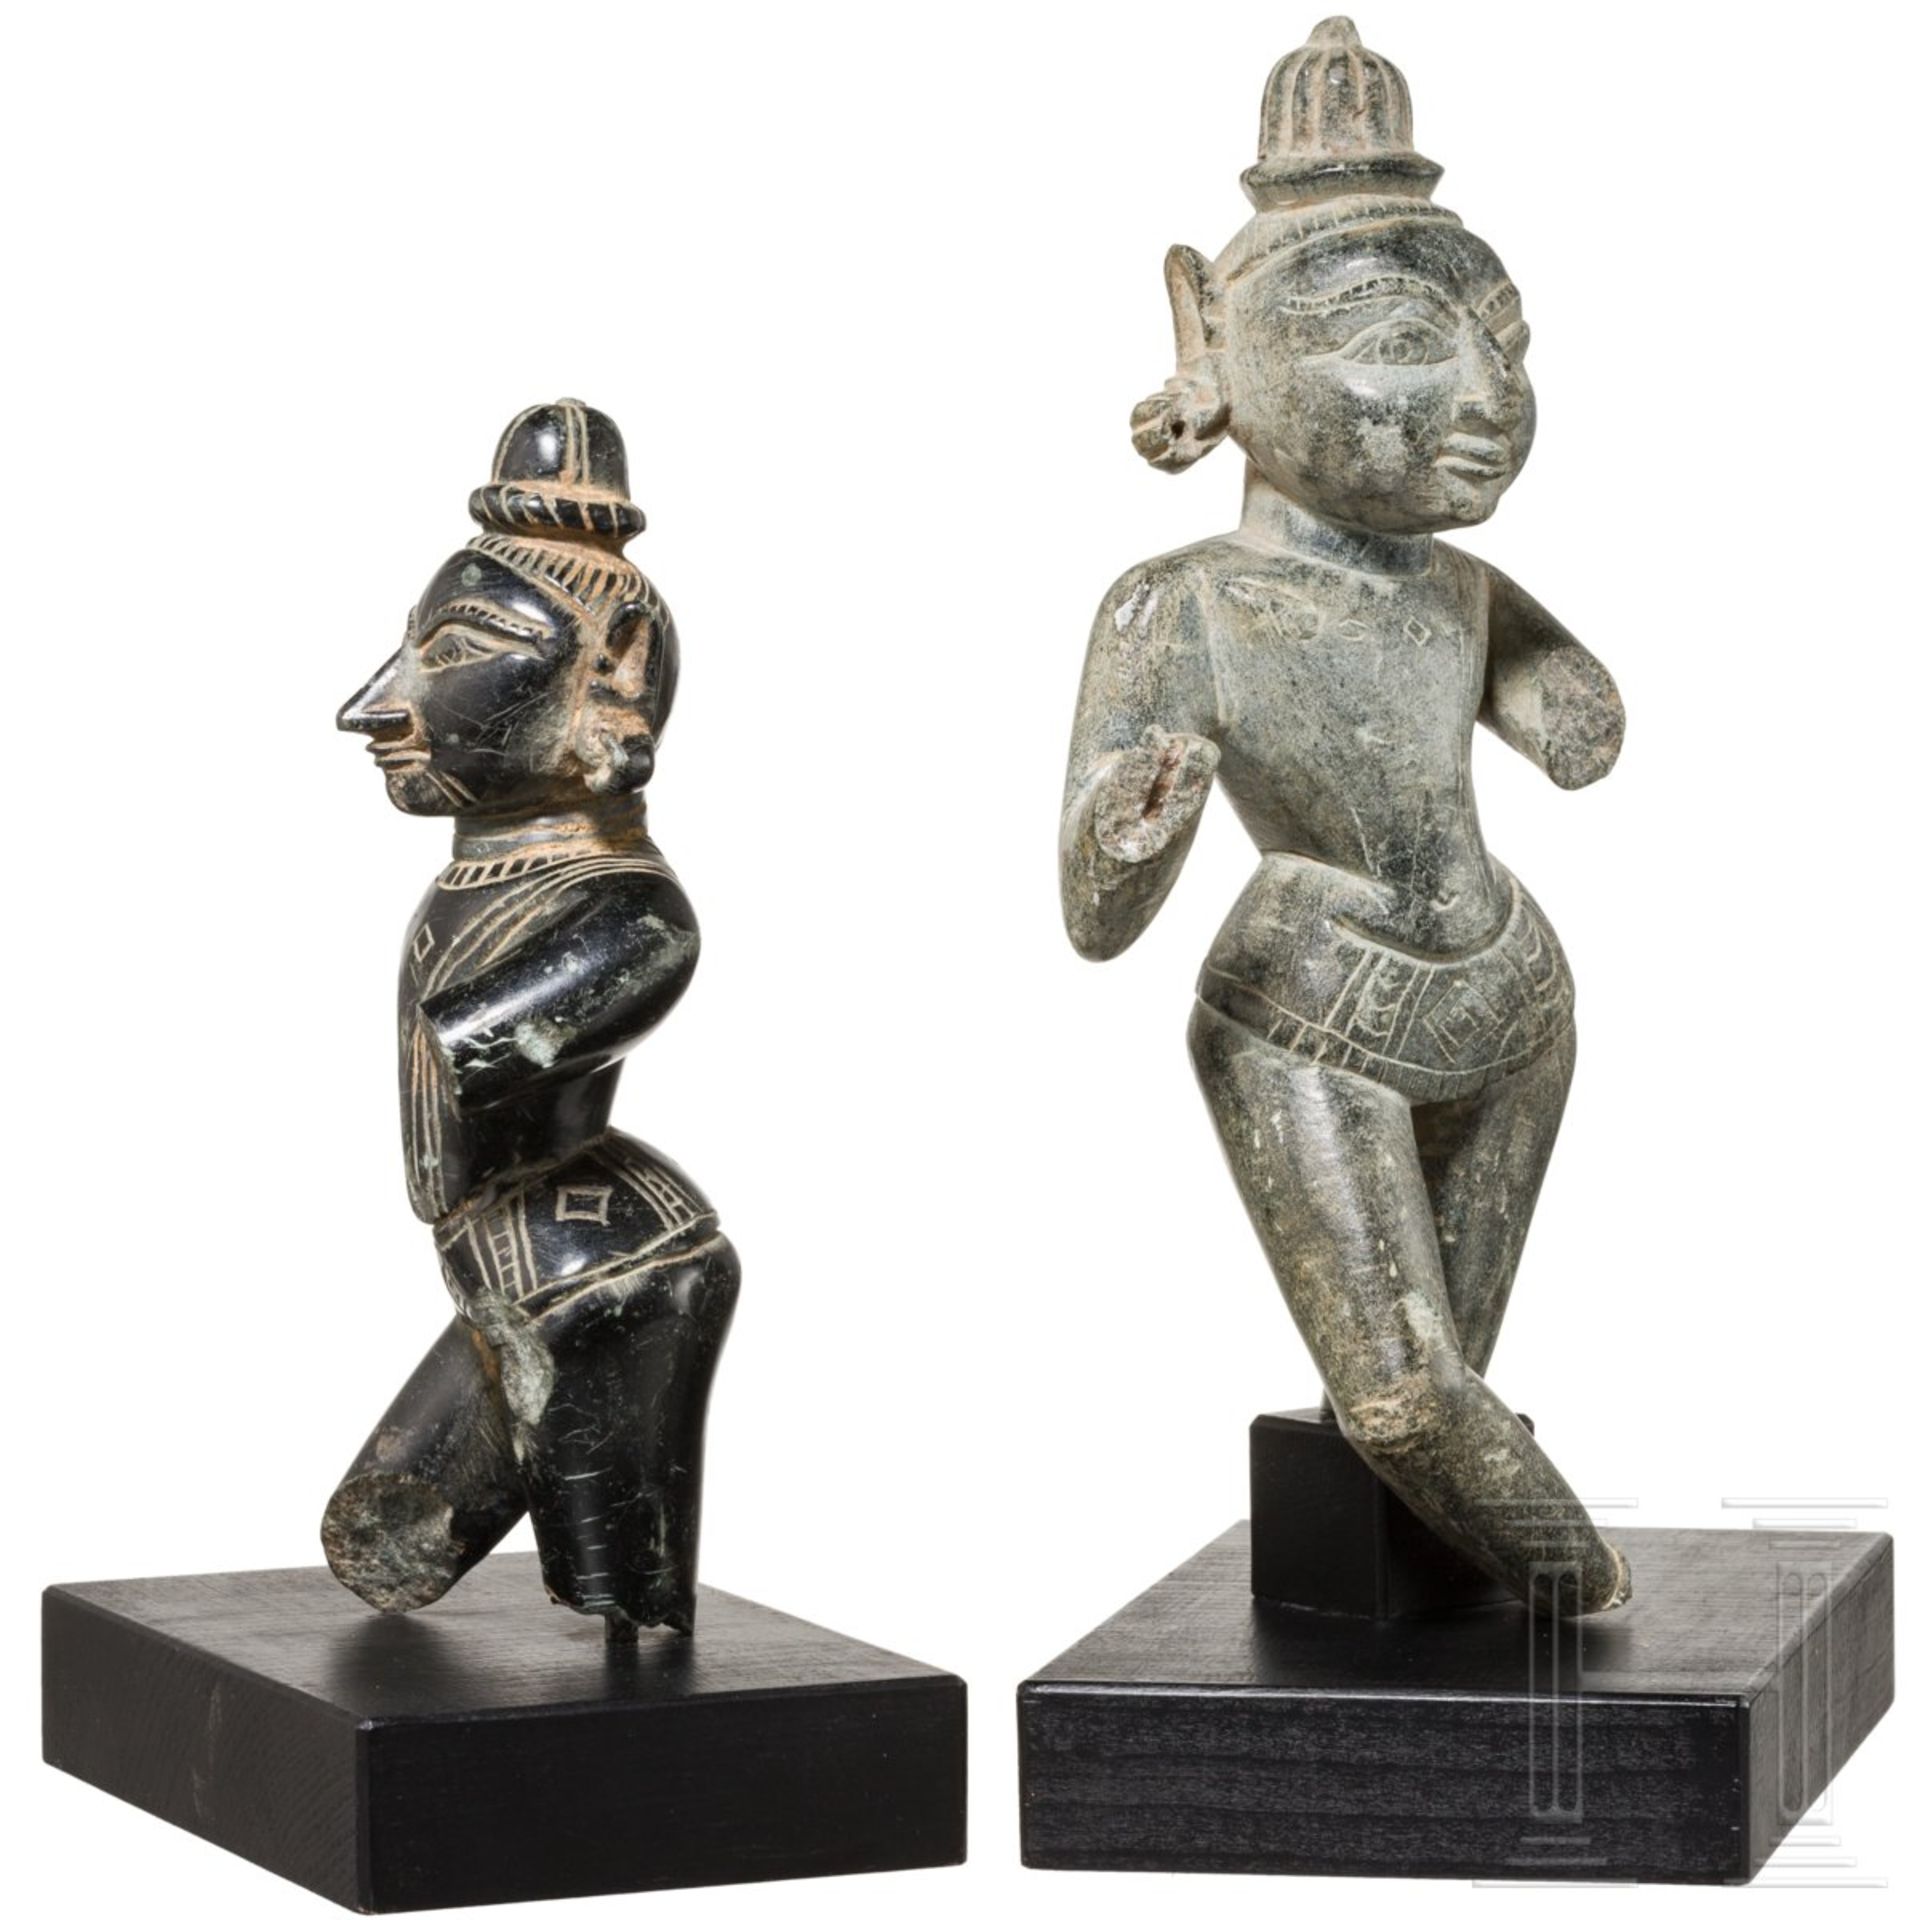 Zwei Skulpturen von Gottheiten, Indien, 19. Jhdt.Schiefer und schwarzer Basalt. Vollplastisch - Bild 2 aus 3